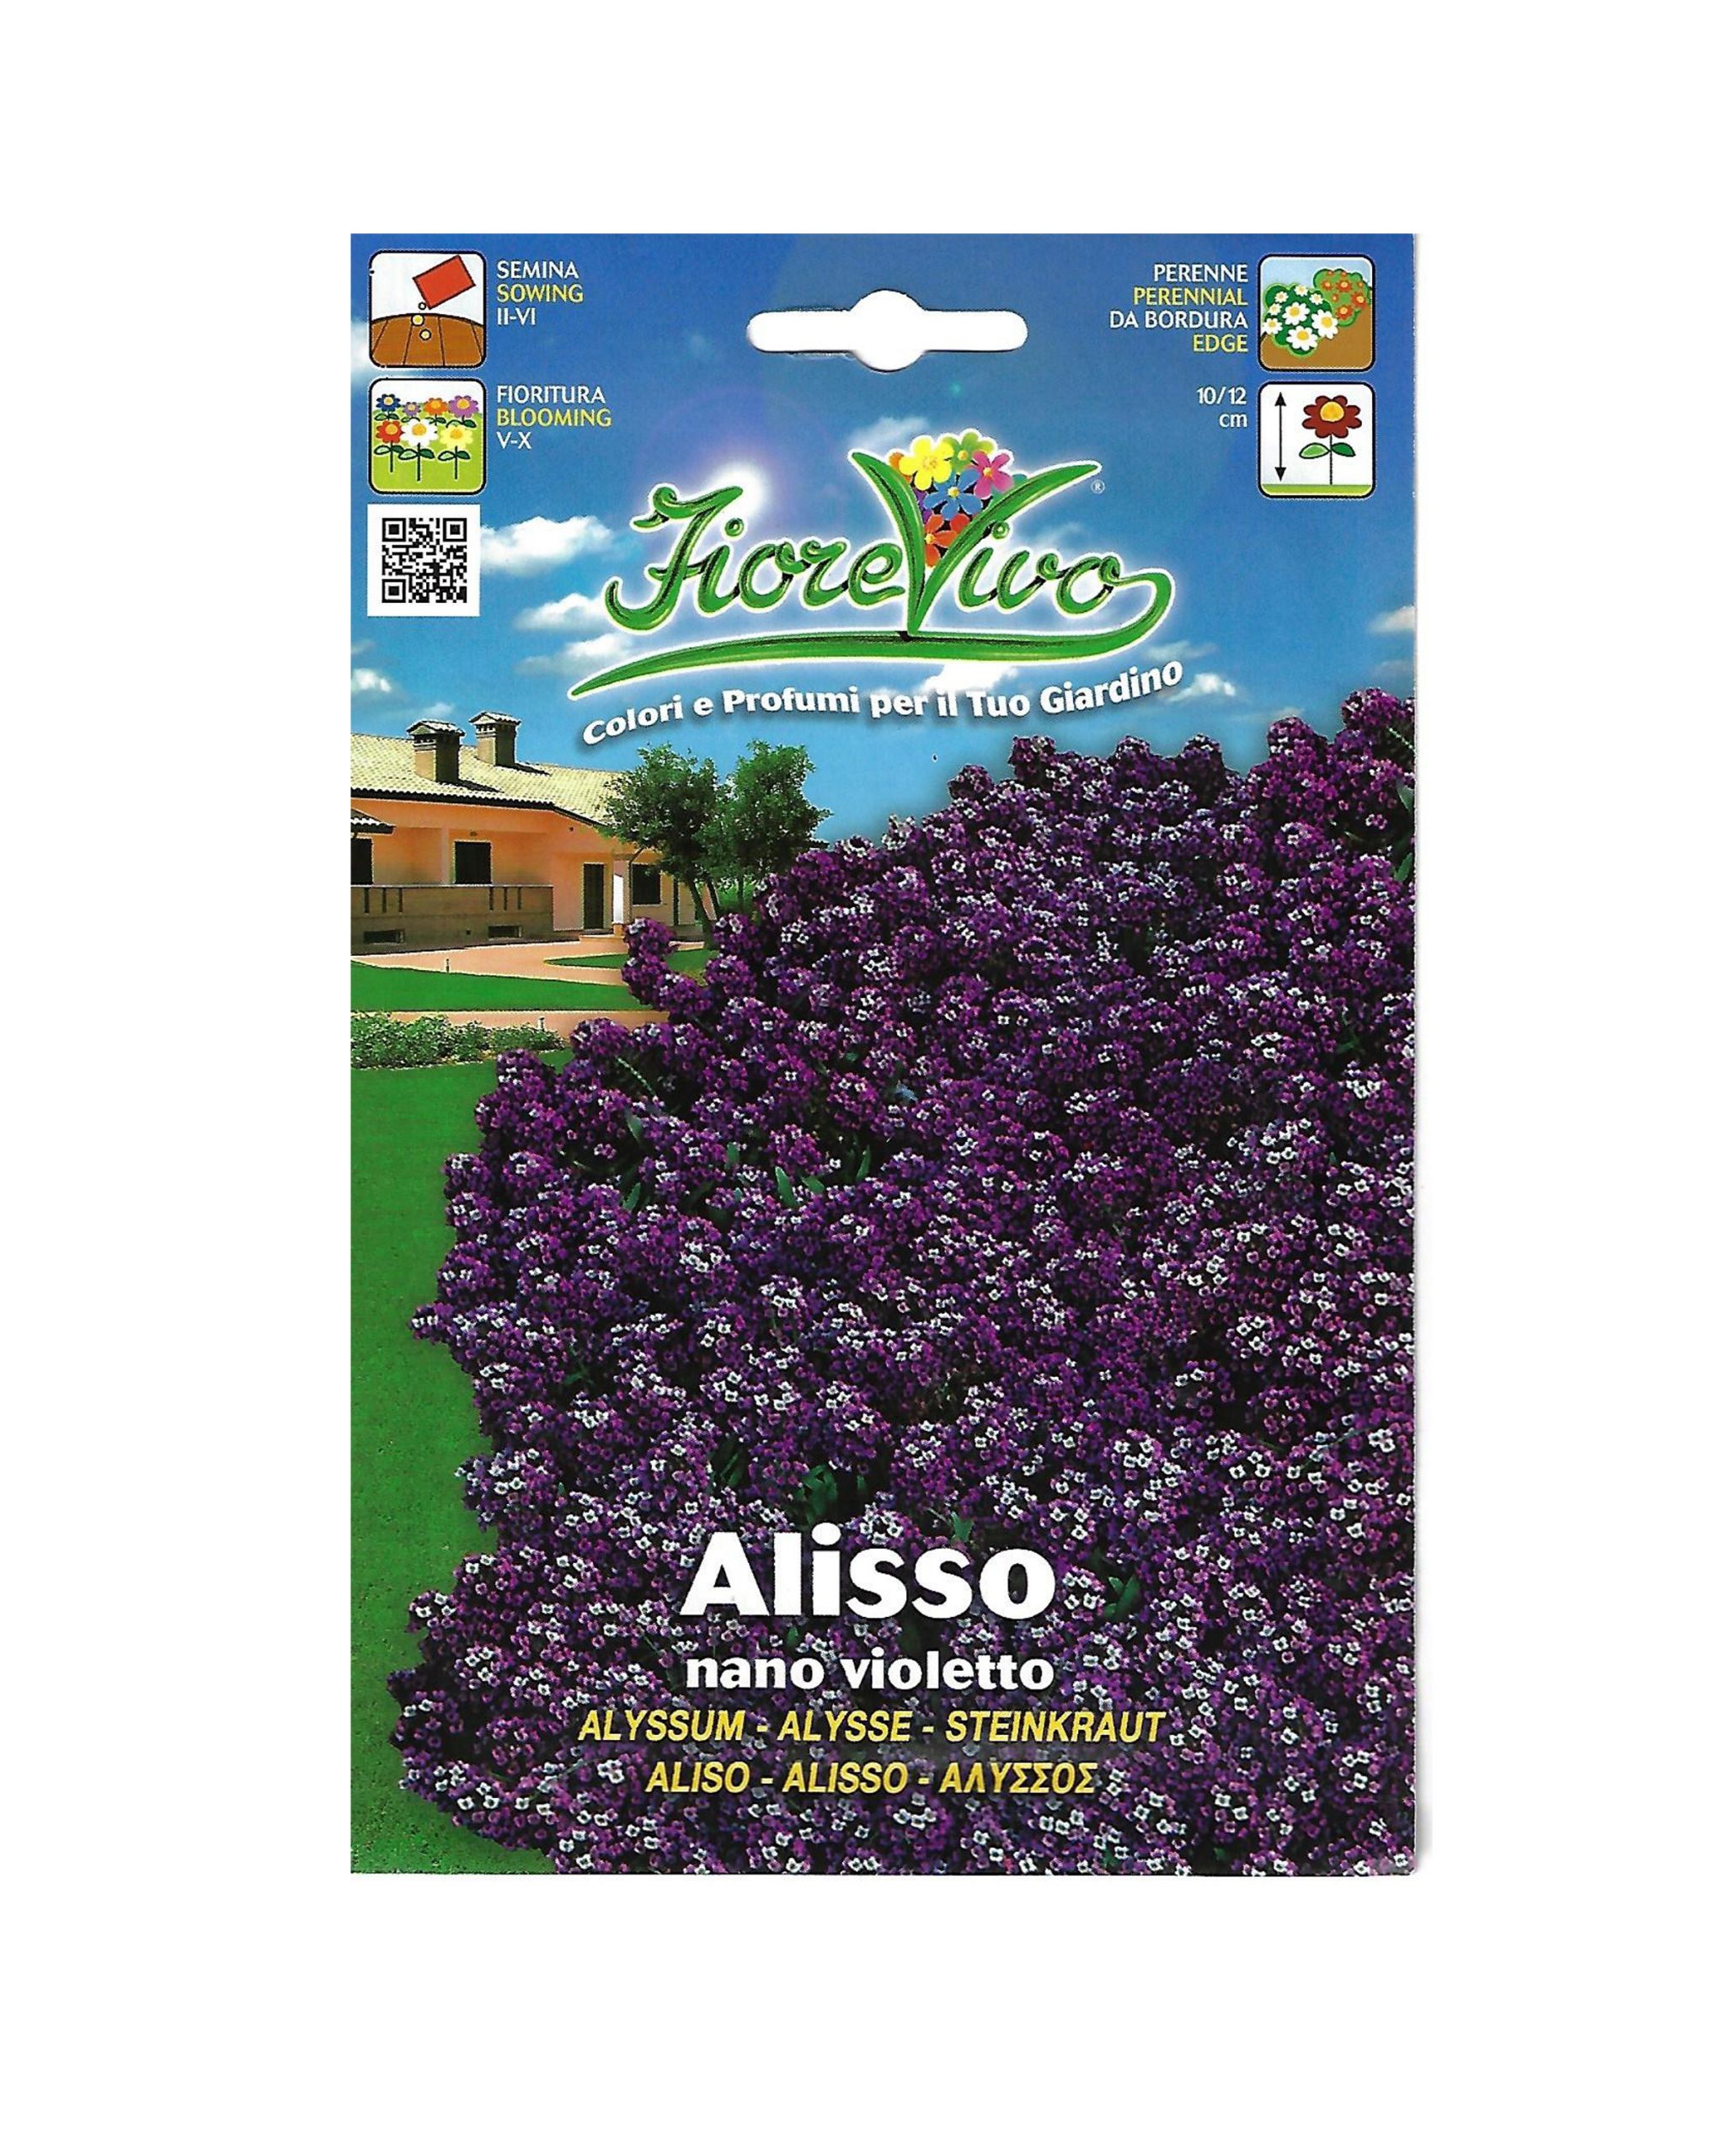 Buy Alisso-Winter Flower Seeds Online on Qetaat.com